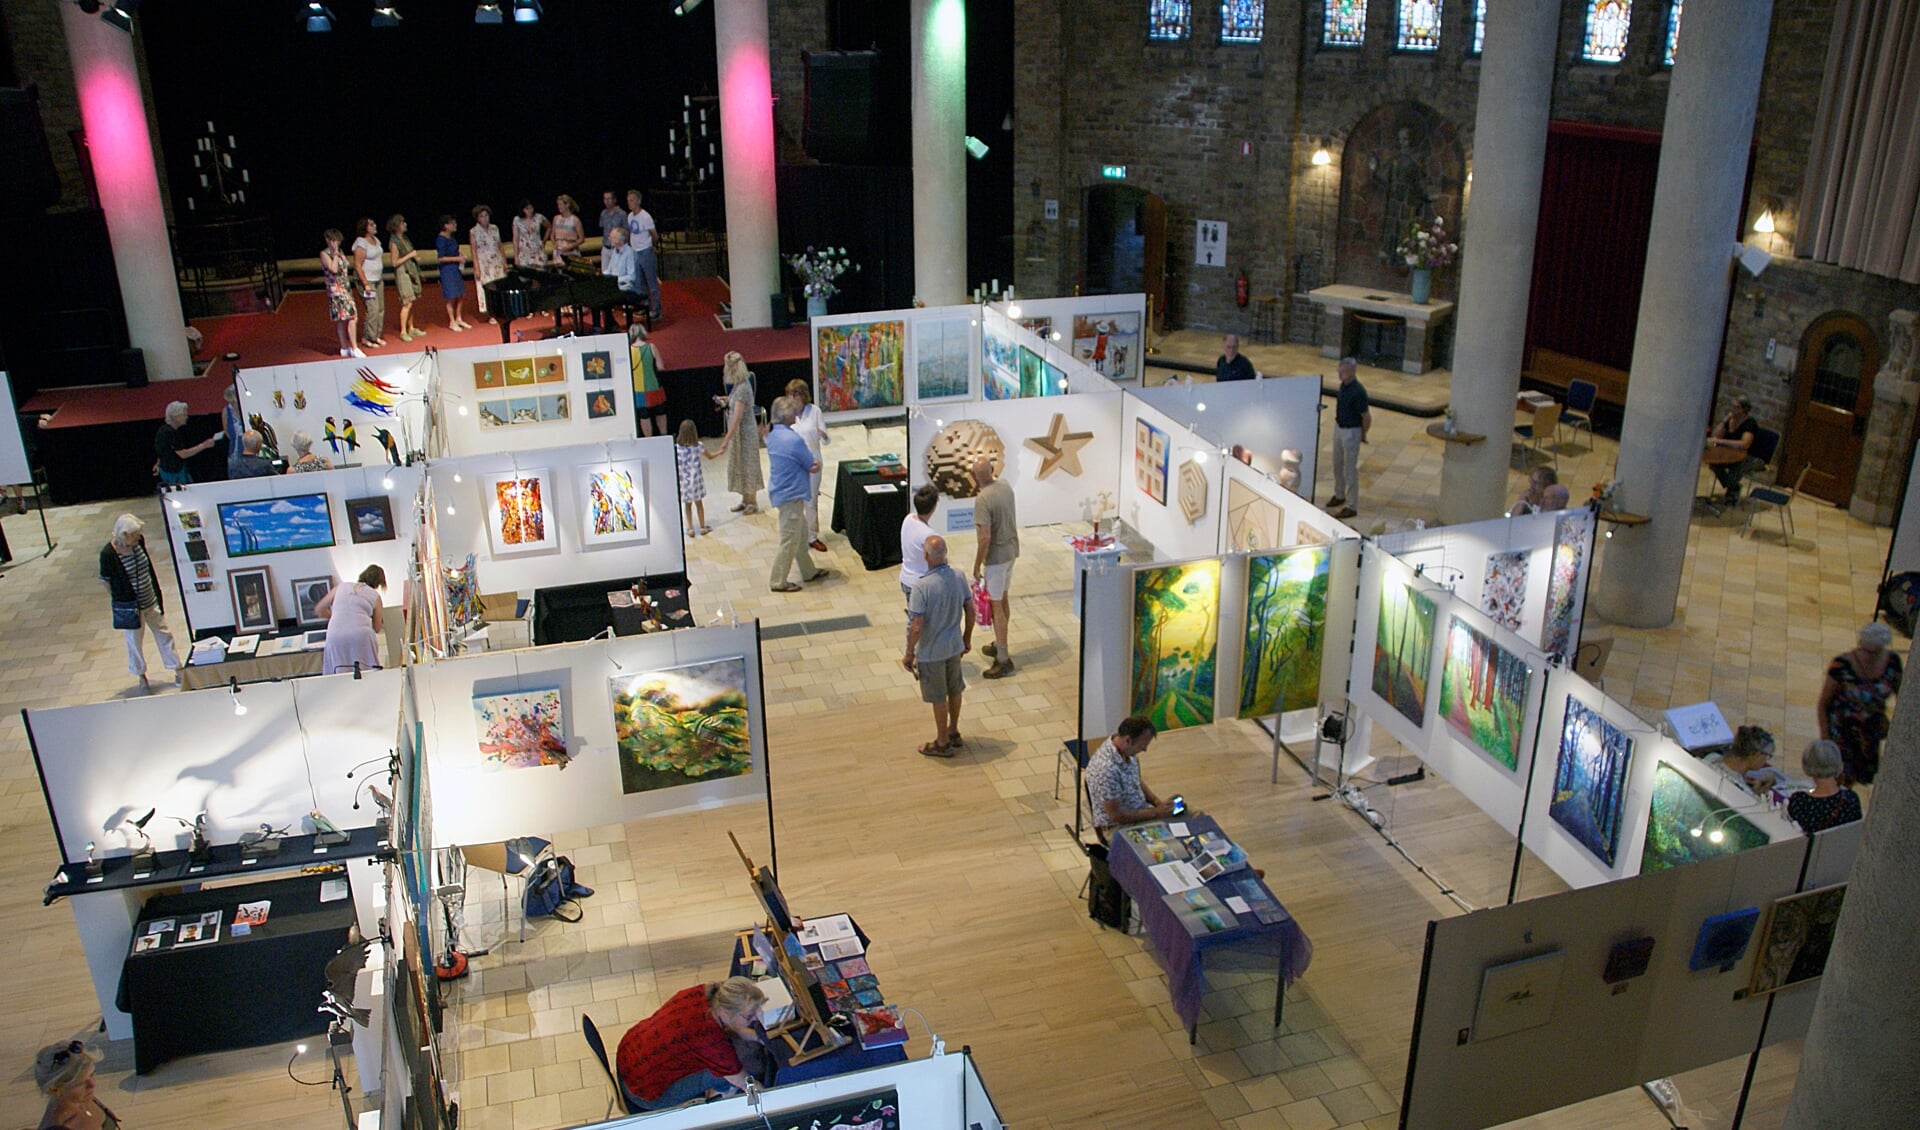 De Cultuurkoepel is opgezet als expositieruimte. 